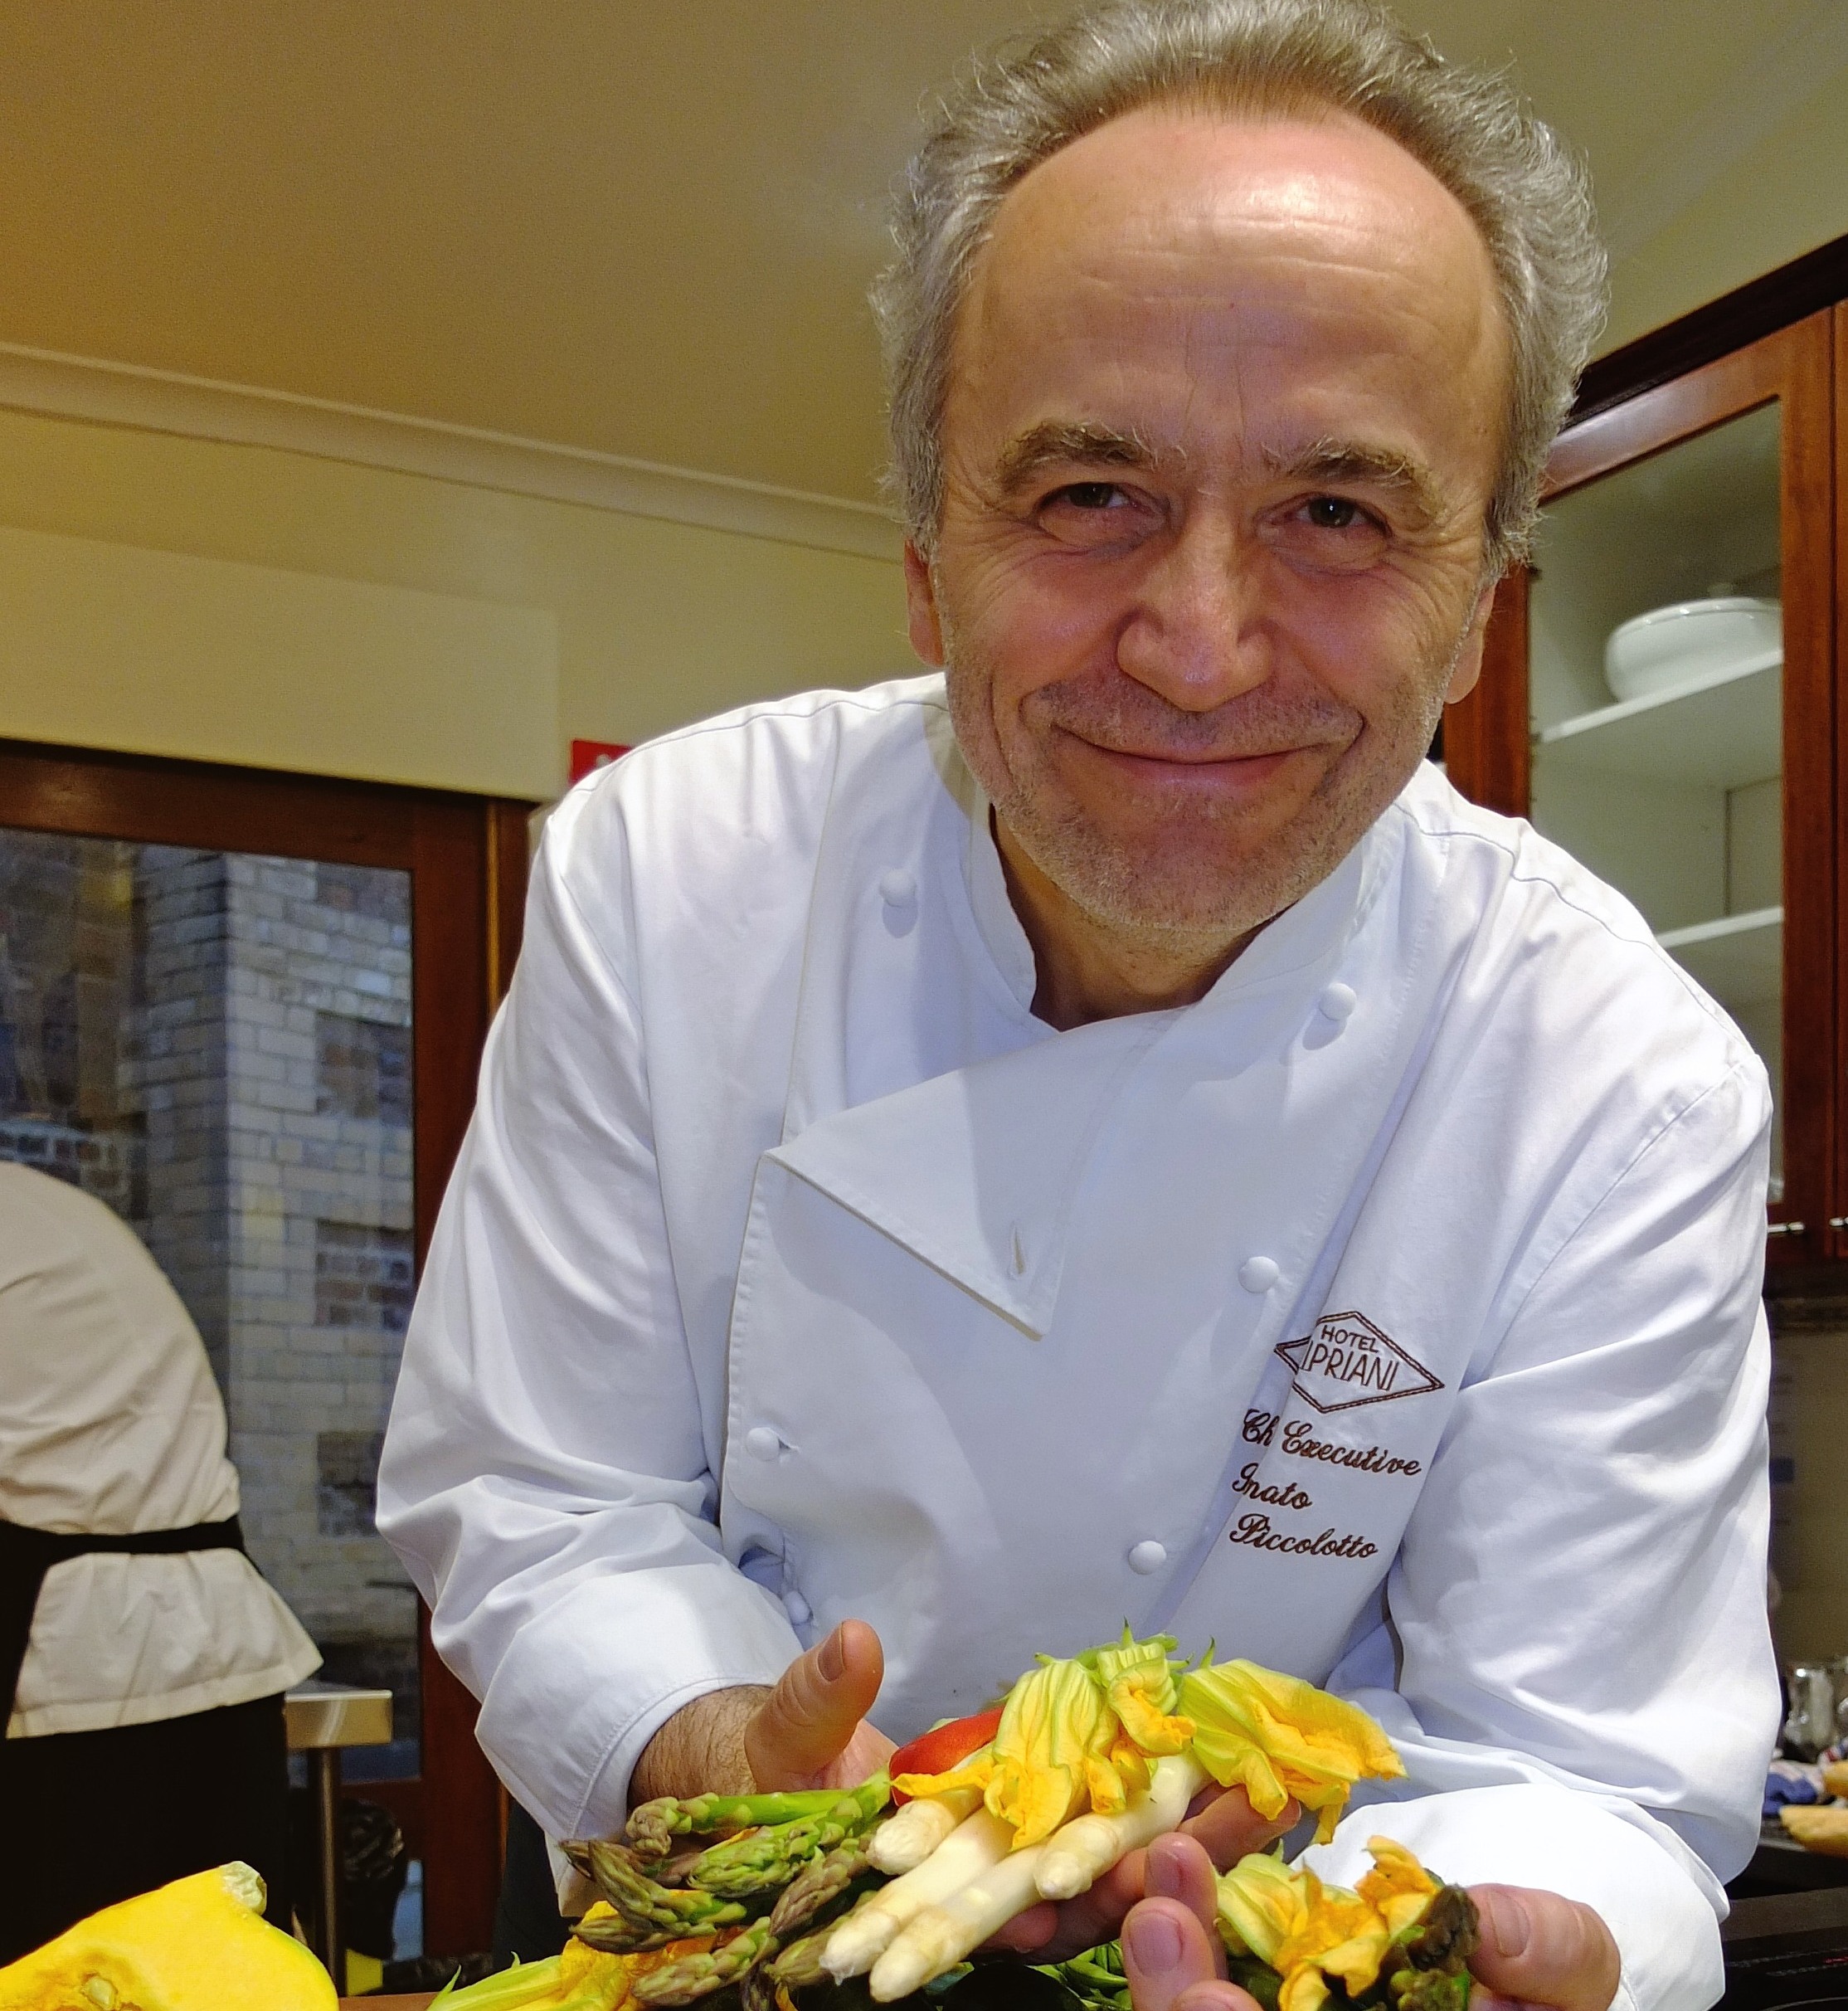 Chef Renato's risotto secrets